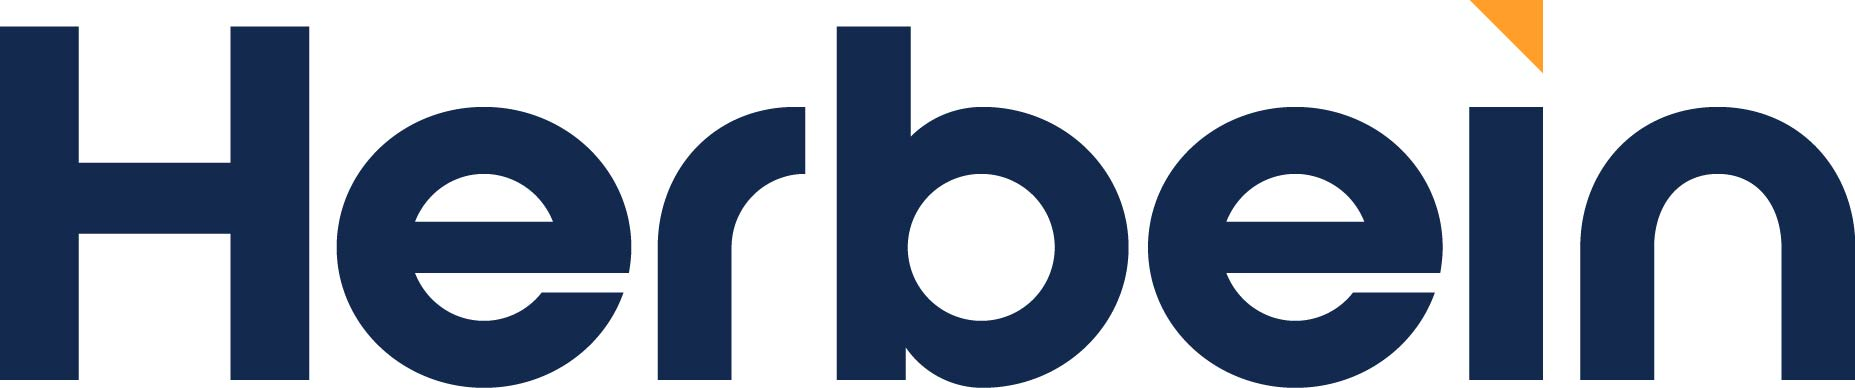 Herbein + Company, Inc. Company Logo